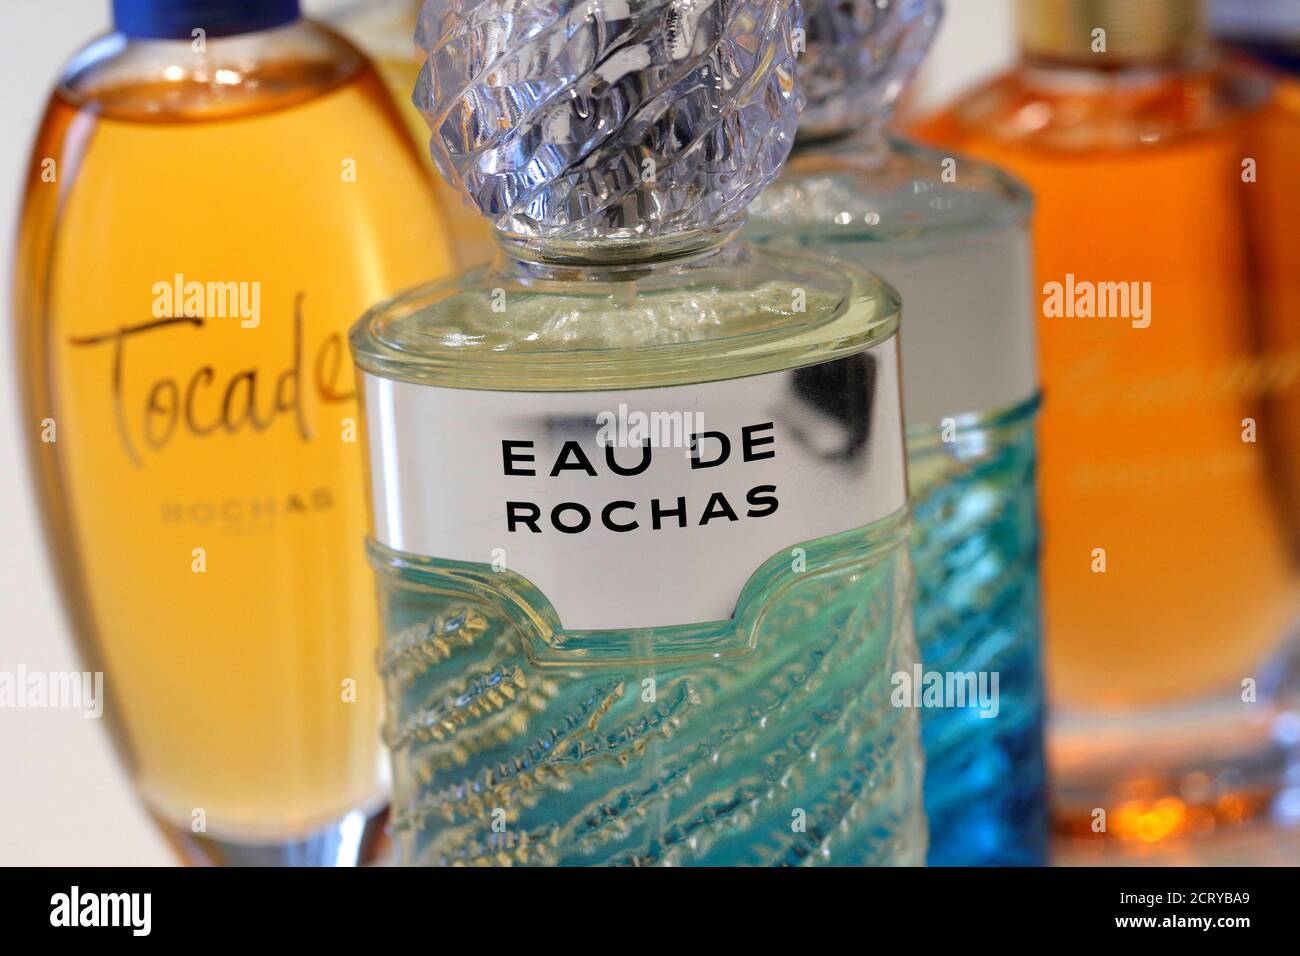 Botlles von Parfüms von Rochas sind im Büro des Parfüm-Hersteller  Interparfums in Paris, Frankreich, 7. November 2016 angezeigt.  REUTERS/Philippe Wojazer Stockfotografie - Alamy